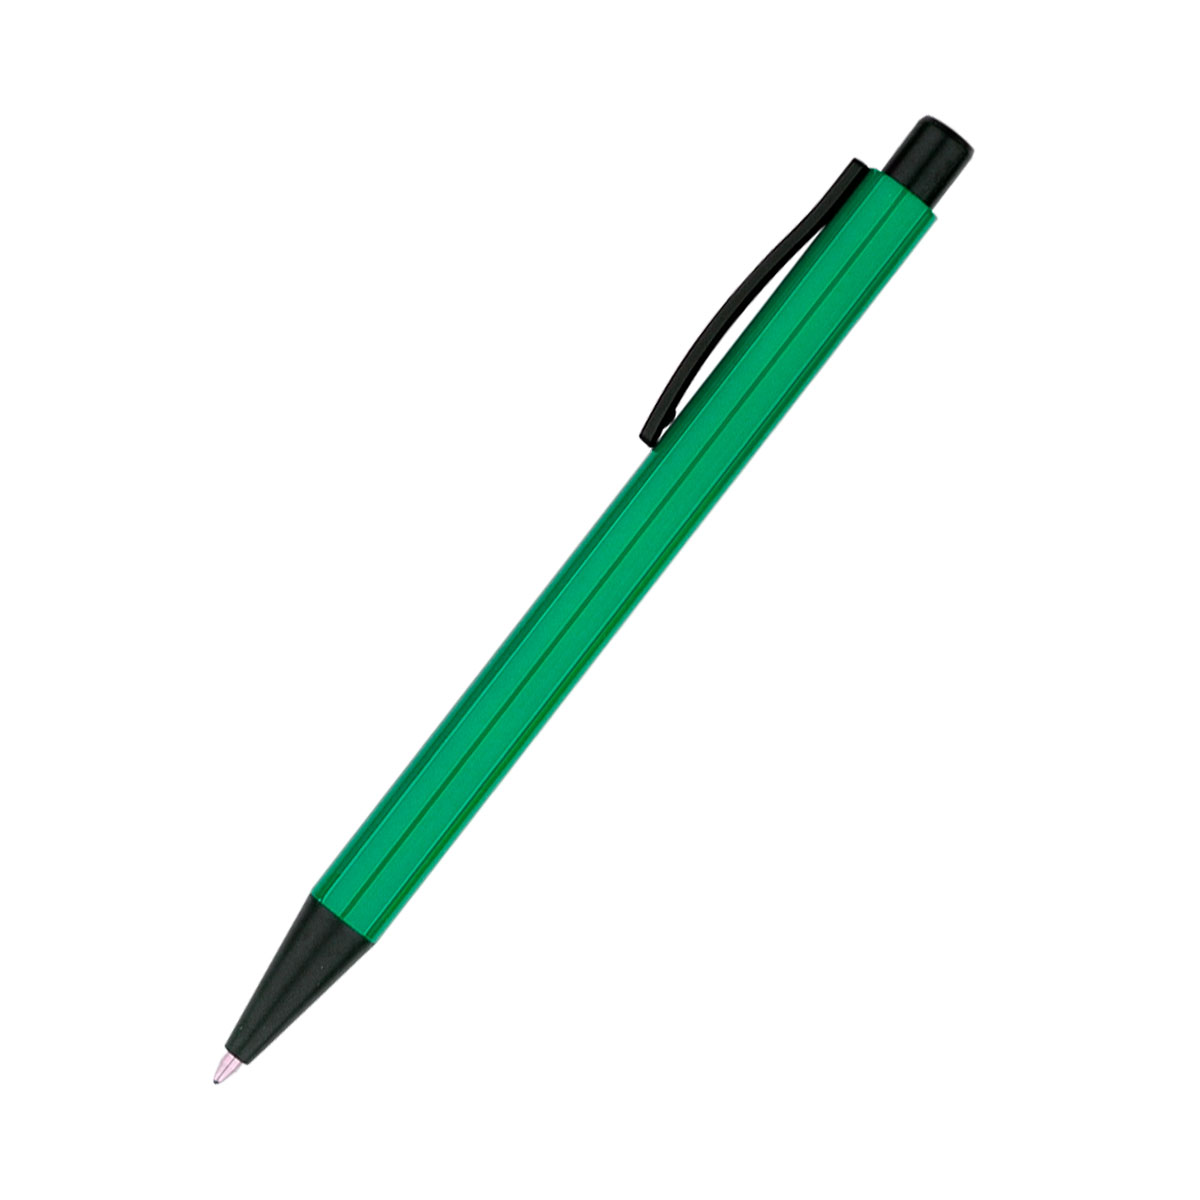 Ручка металлическая Deli - Желтый KK